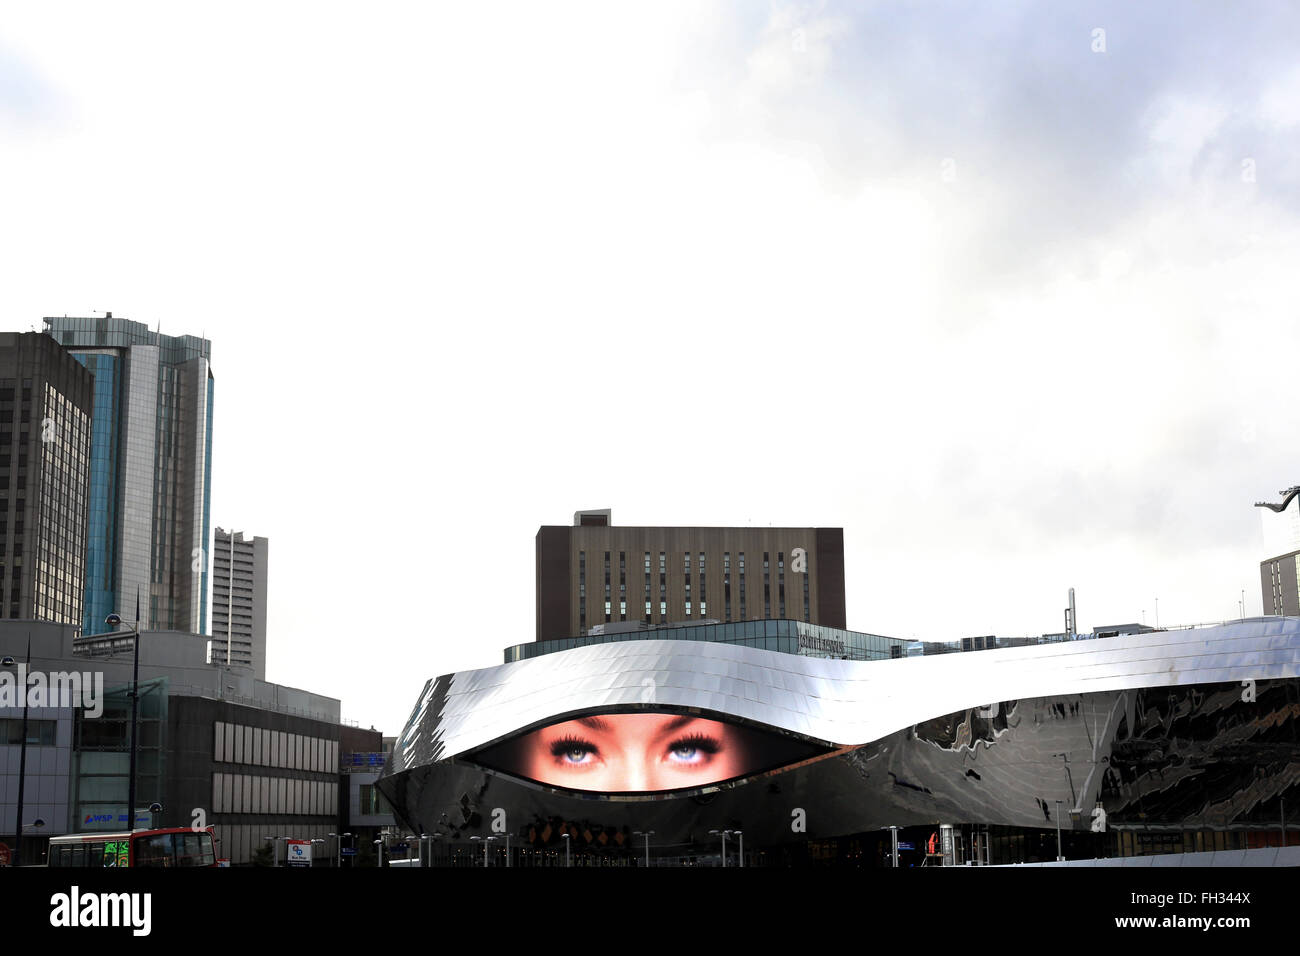 Birmingham New Street Station John Lewis und Grand Central Eingang zeigen die Augen einer Frau in der Werbung-Anzeige Stockfoto